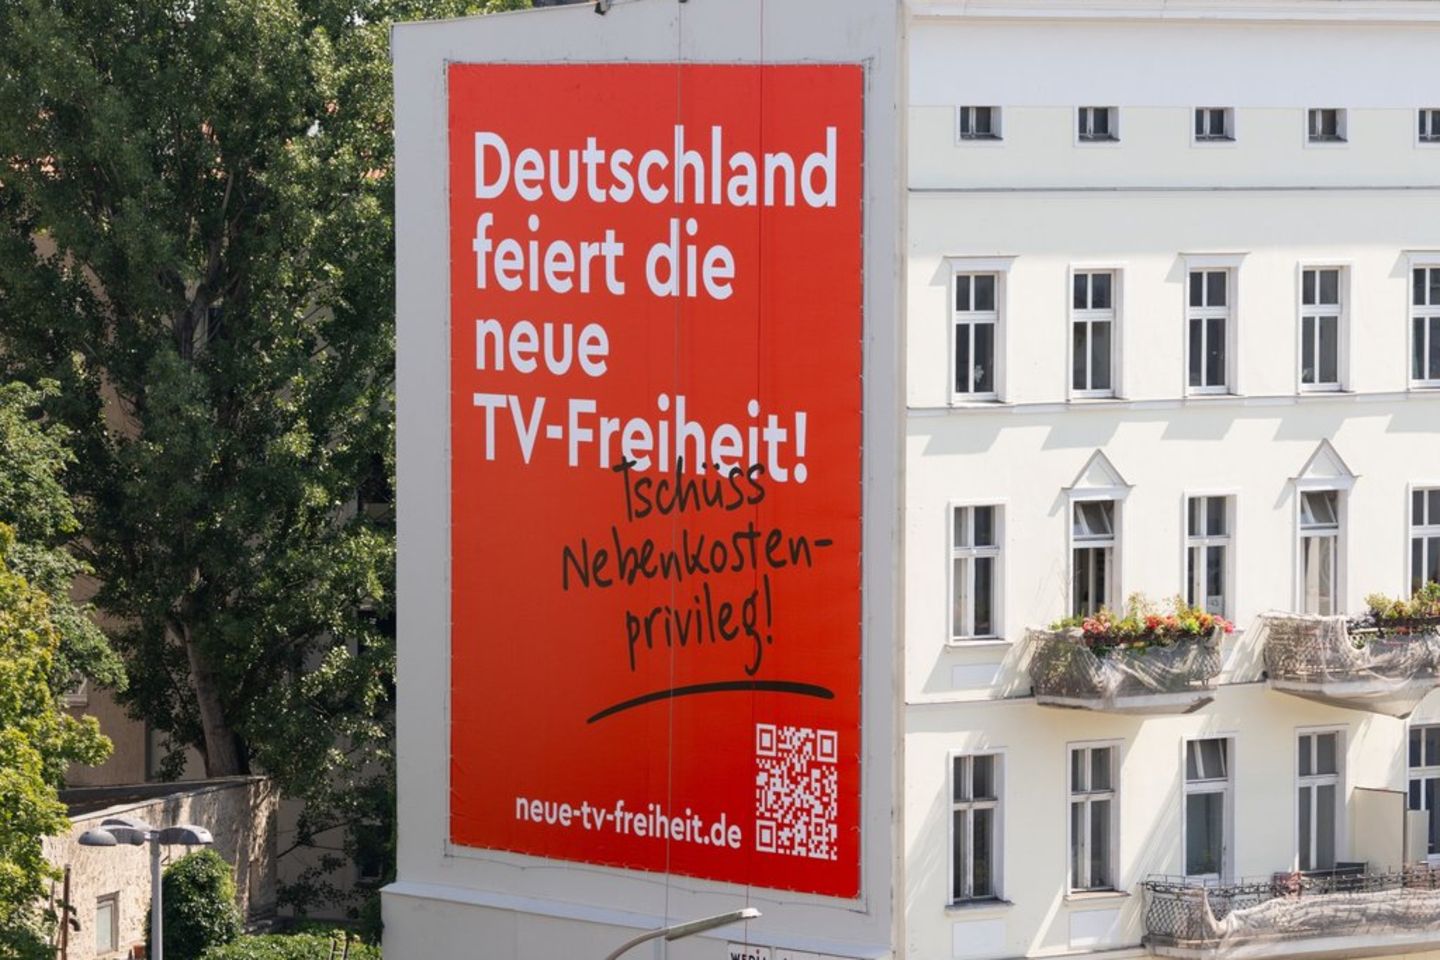 Tschüss, Nebenkostenprivileg: Charmante Aufklärungskampagne zur neuen TV-Freiheit